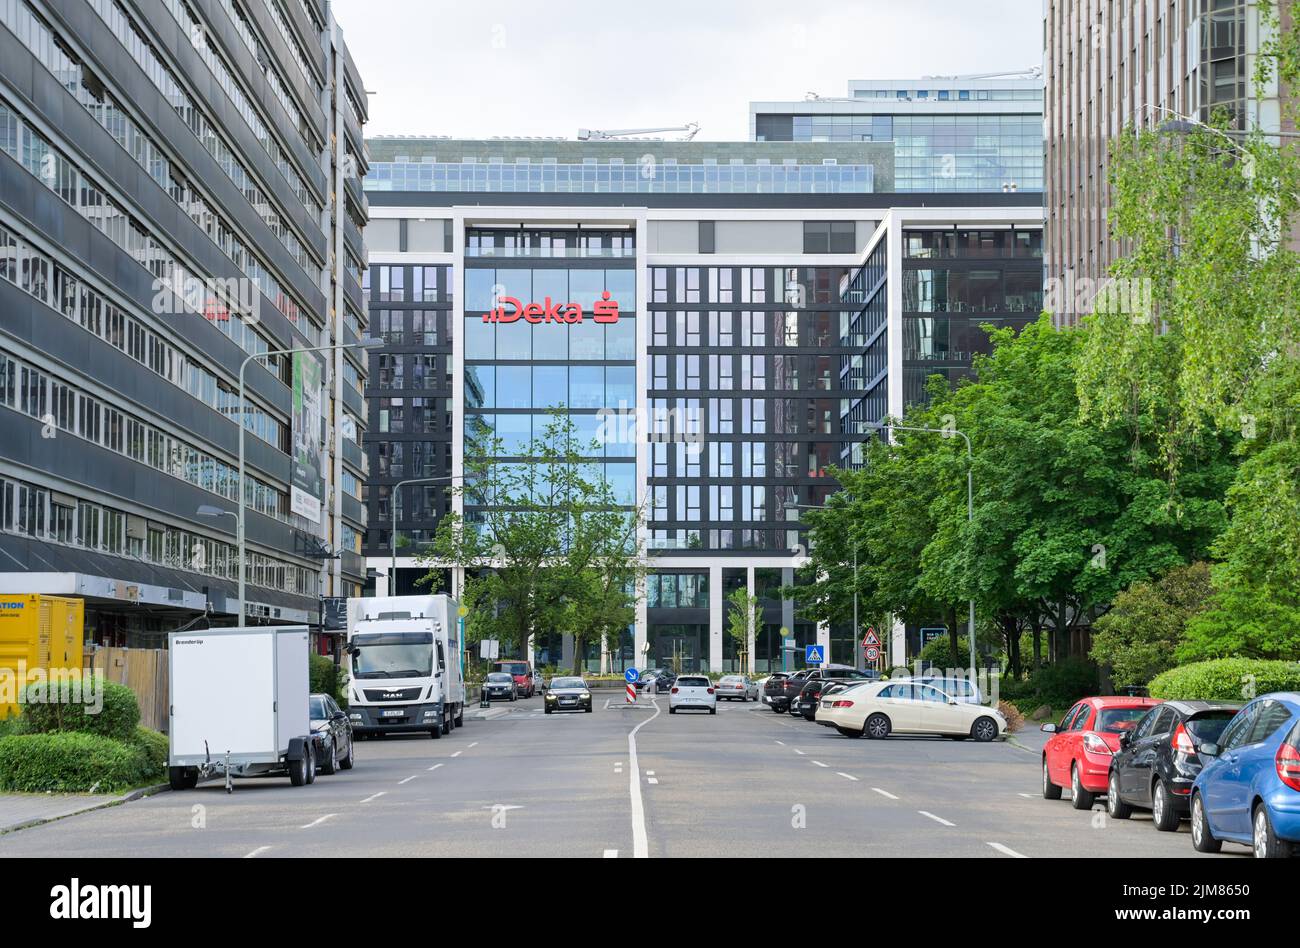 Deka Bank, Lyoner Straße, Lyoner Quartier, Niederrad, Frankfurt am Main, Hessen, Deutschland Stock Photo